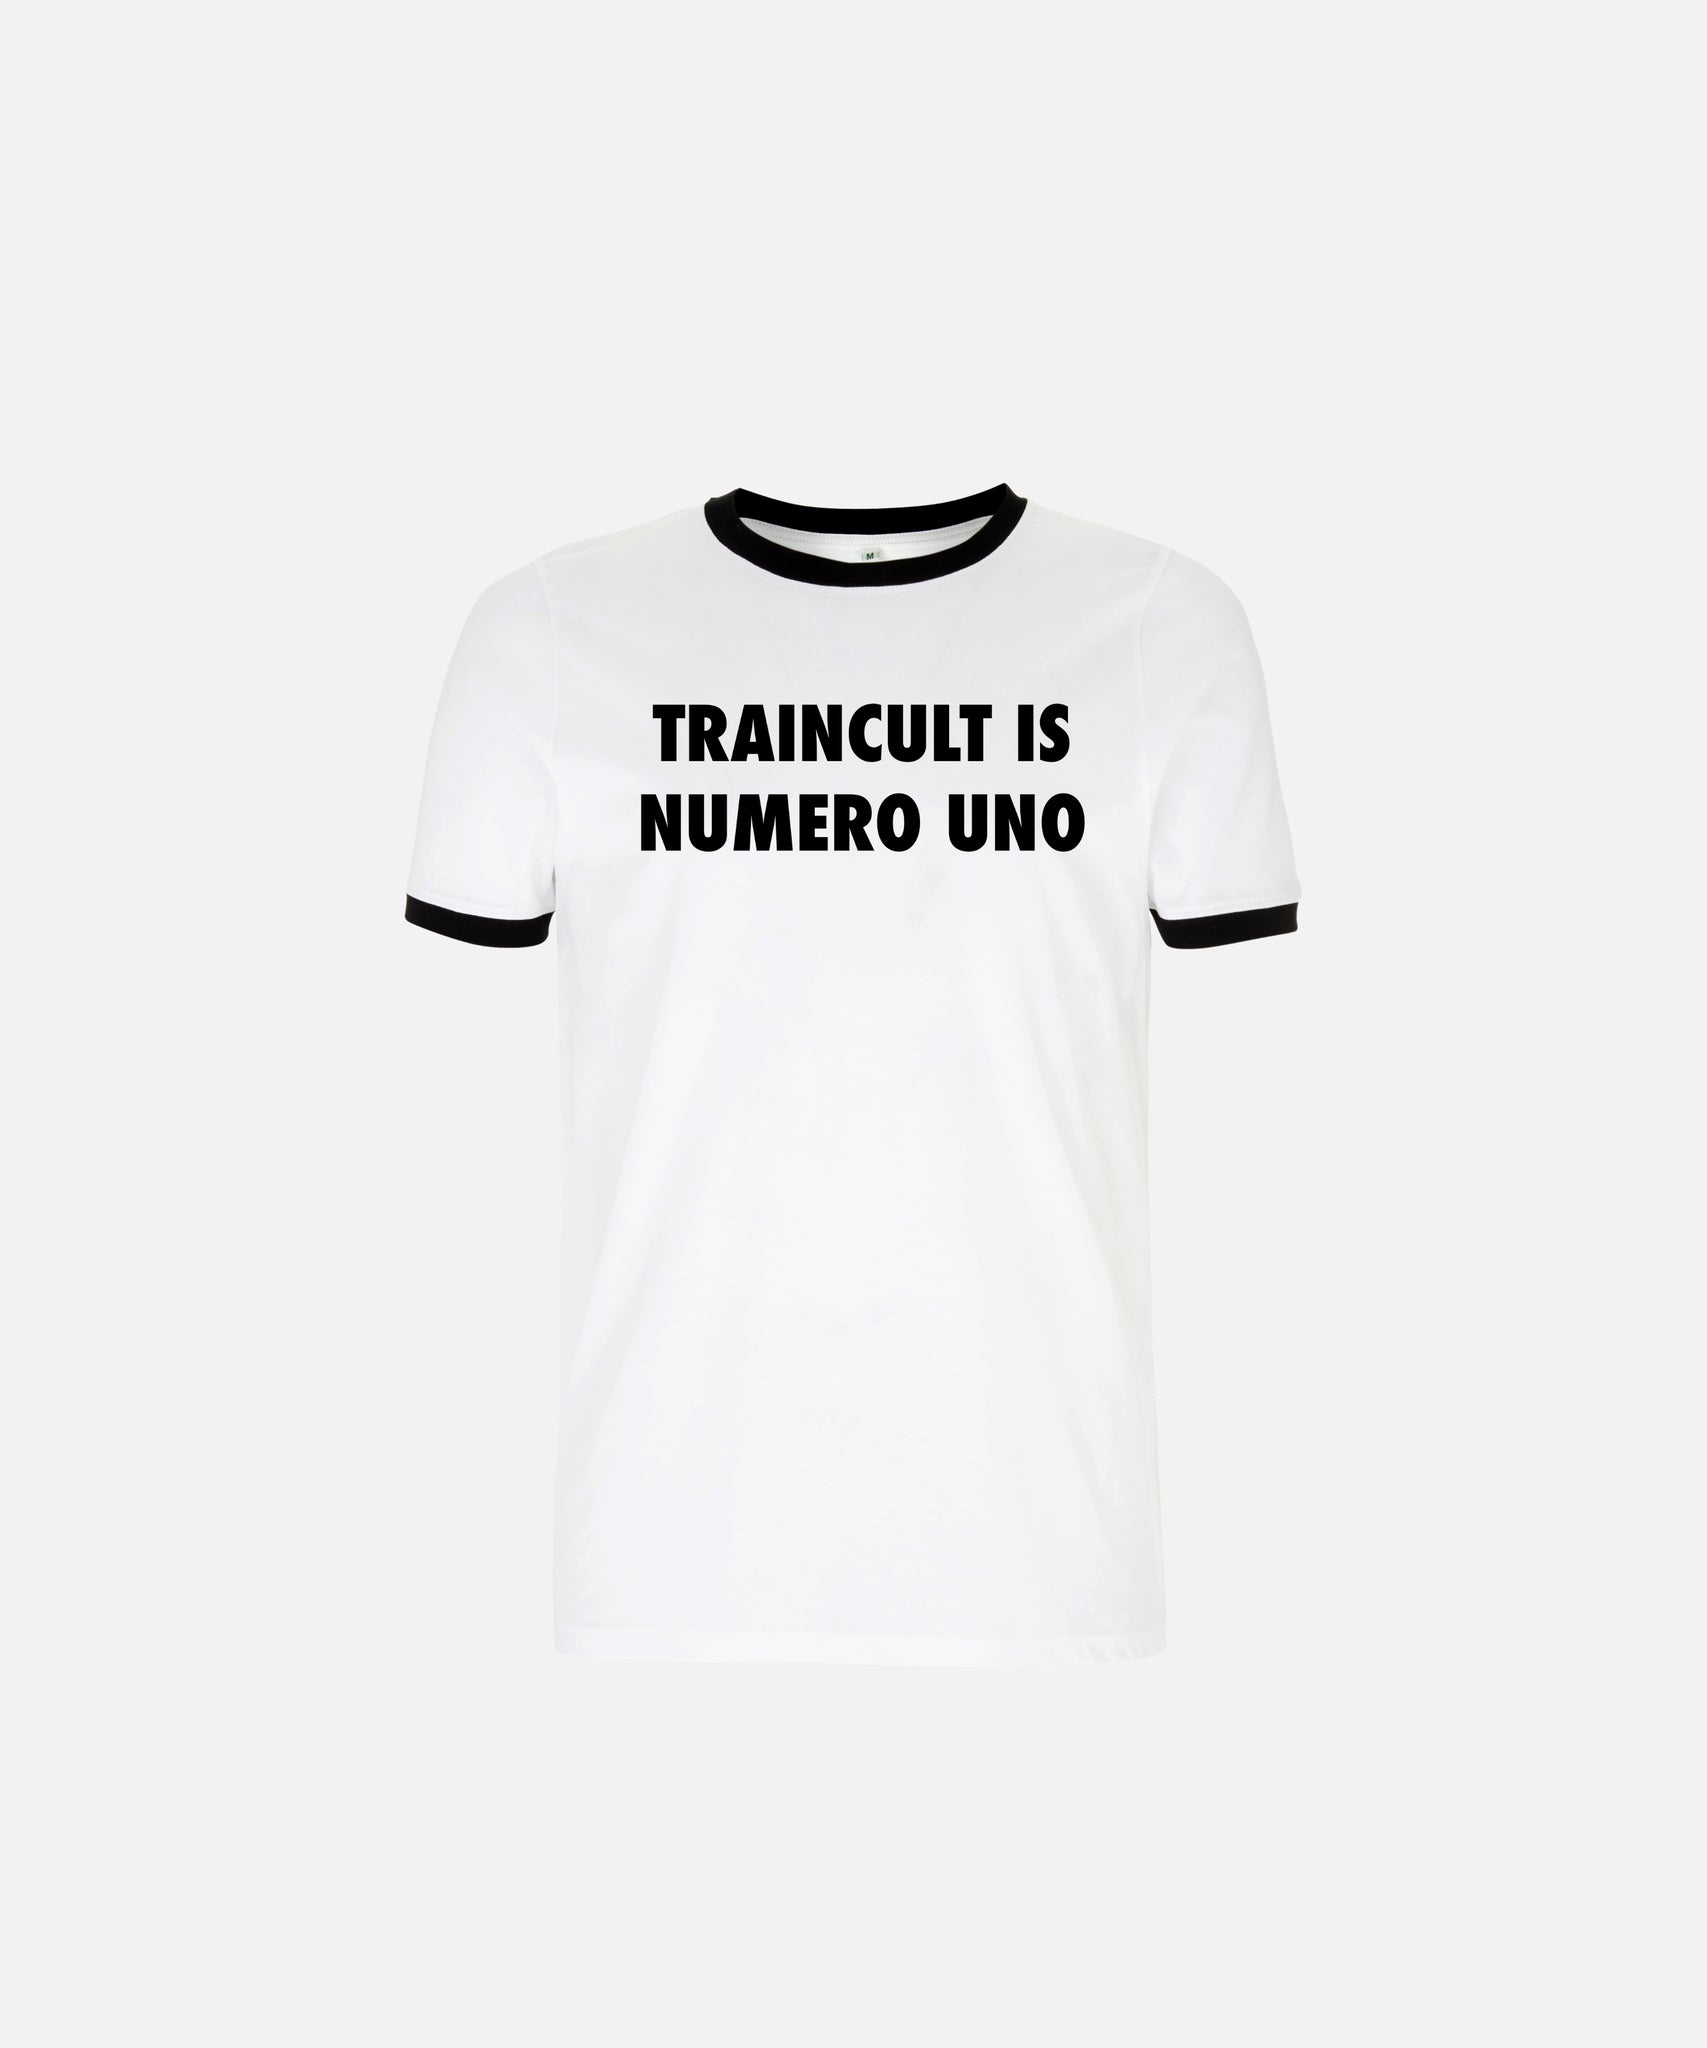 Traincult T-shirt.